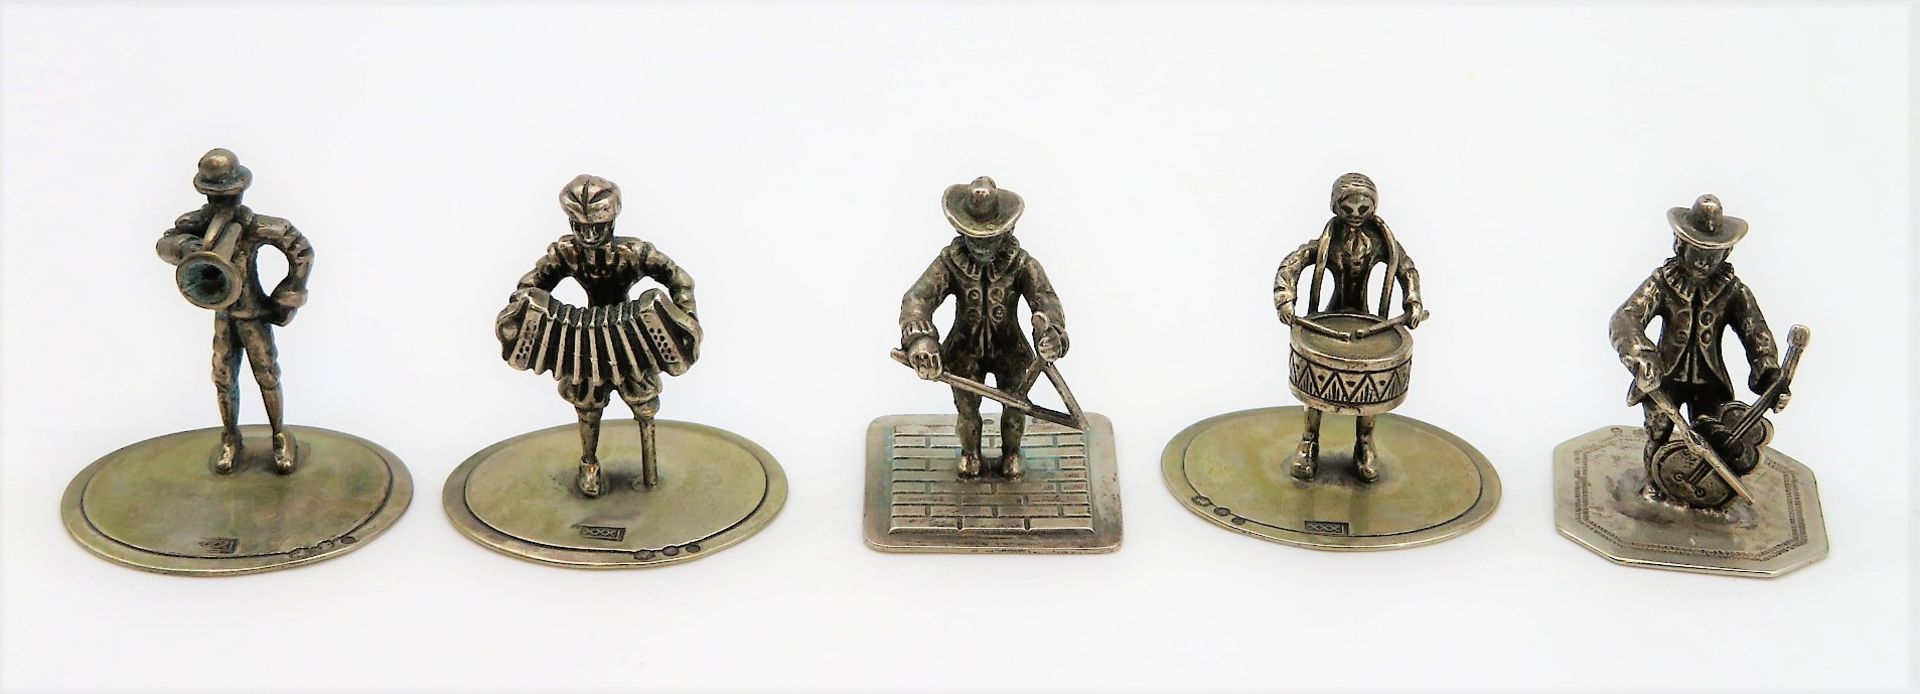 5 Miniaturen, Musikanten, 835er Silber, gepunzt, 41,2 g, h 3 cm, d 2,7 cm.